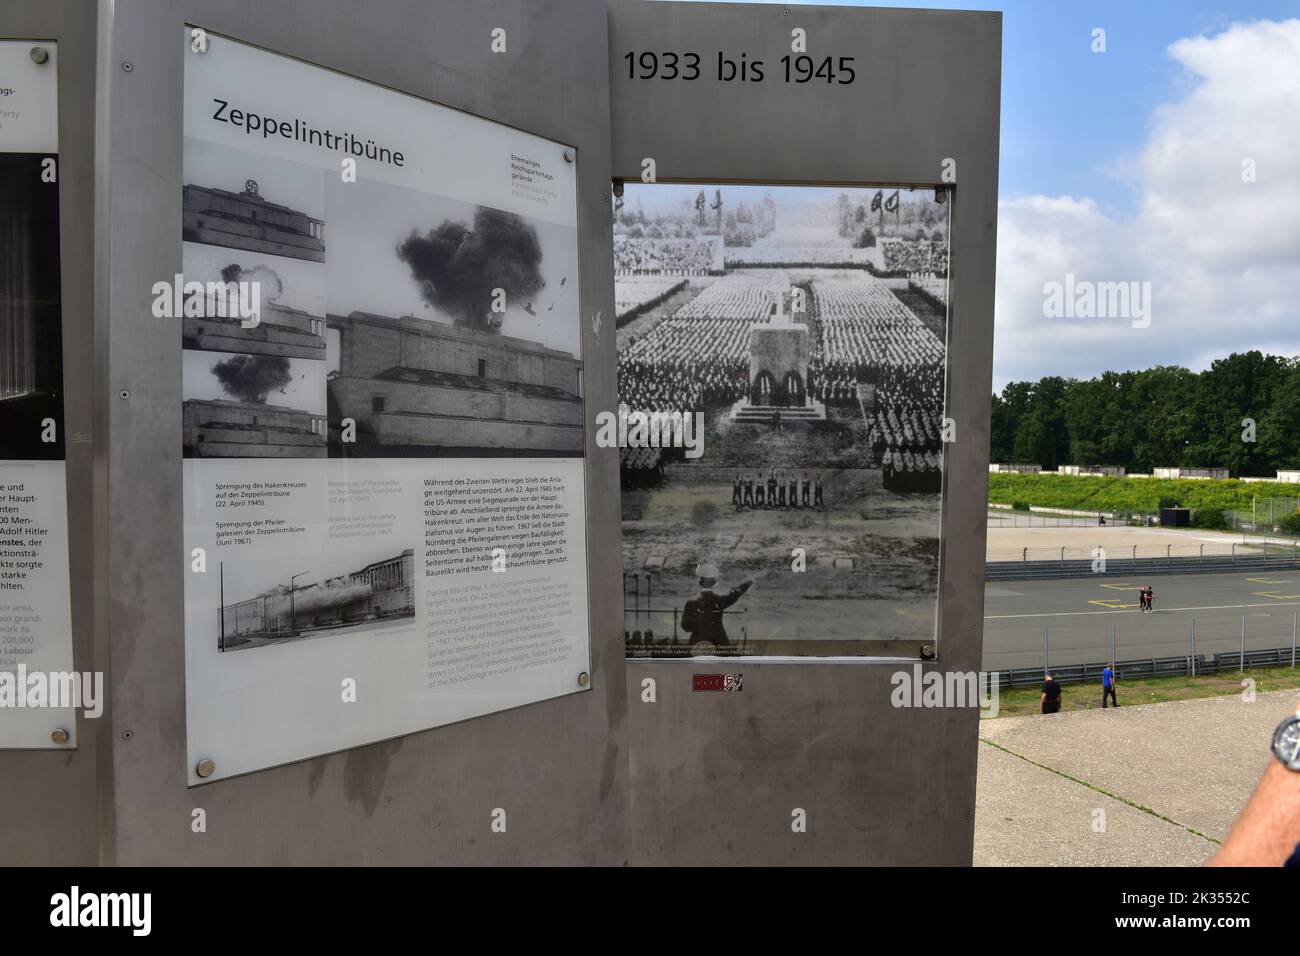 Campo di Zeppelin nell'ex raduno del partito nazista a Norimberga, Baviera, Germania Foto Stock